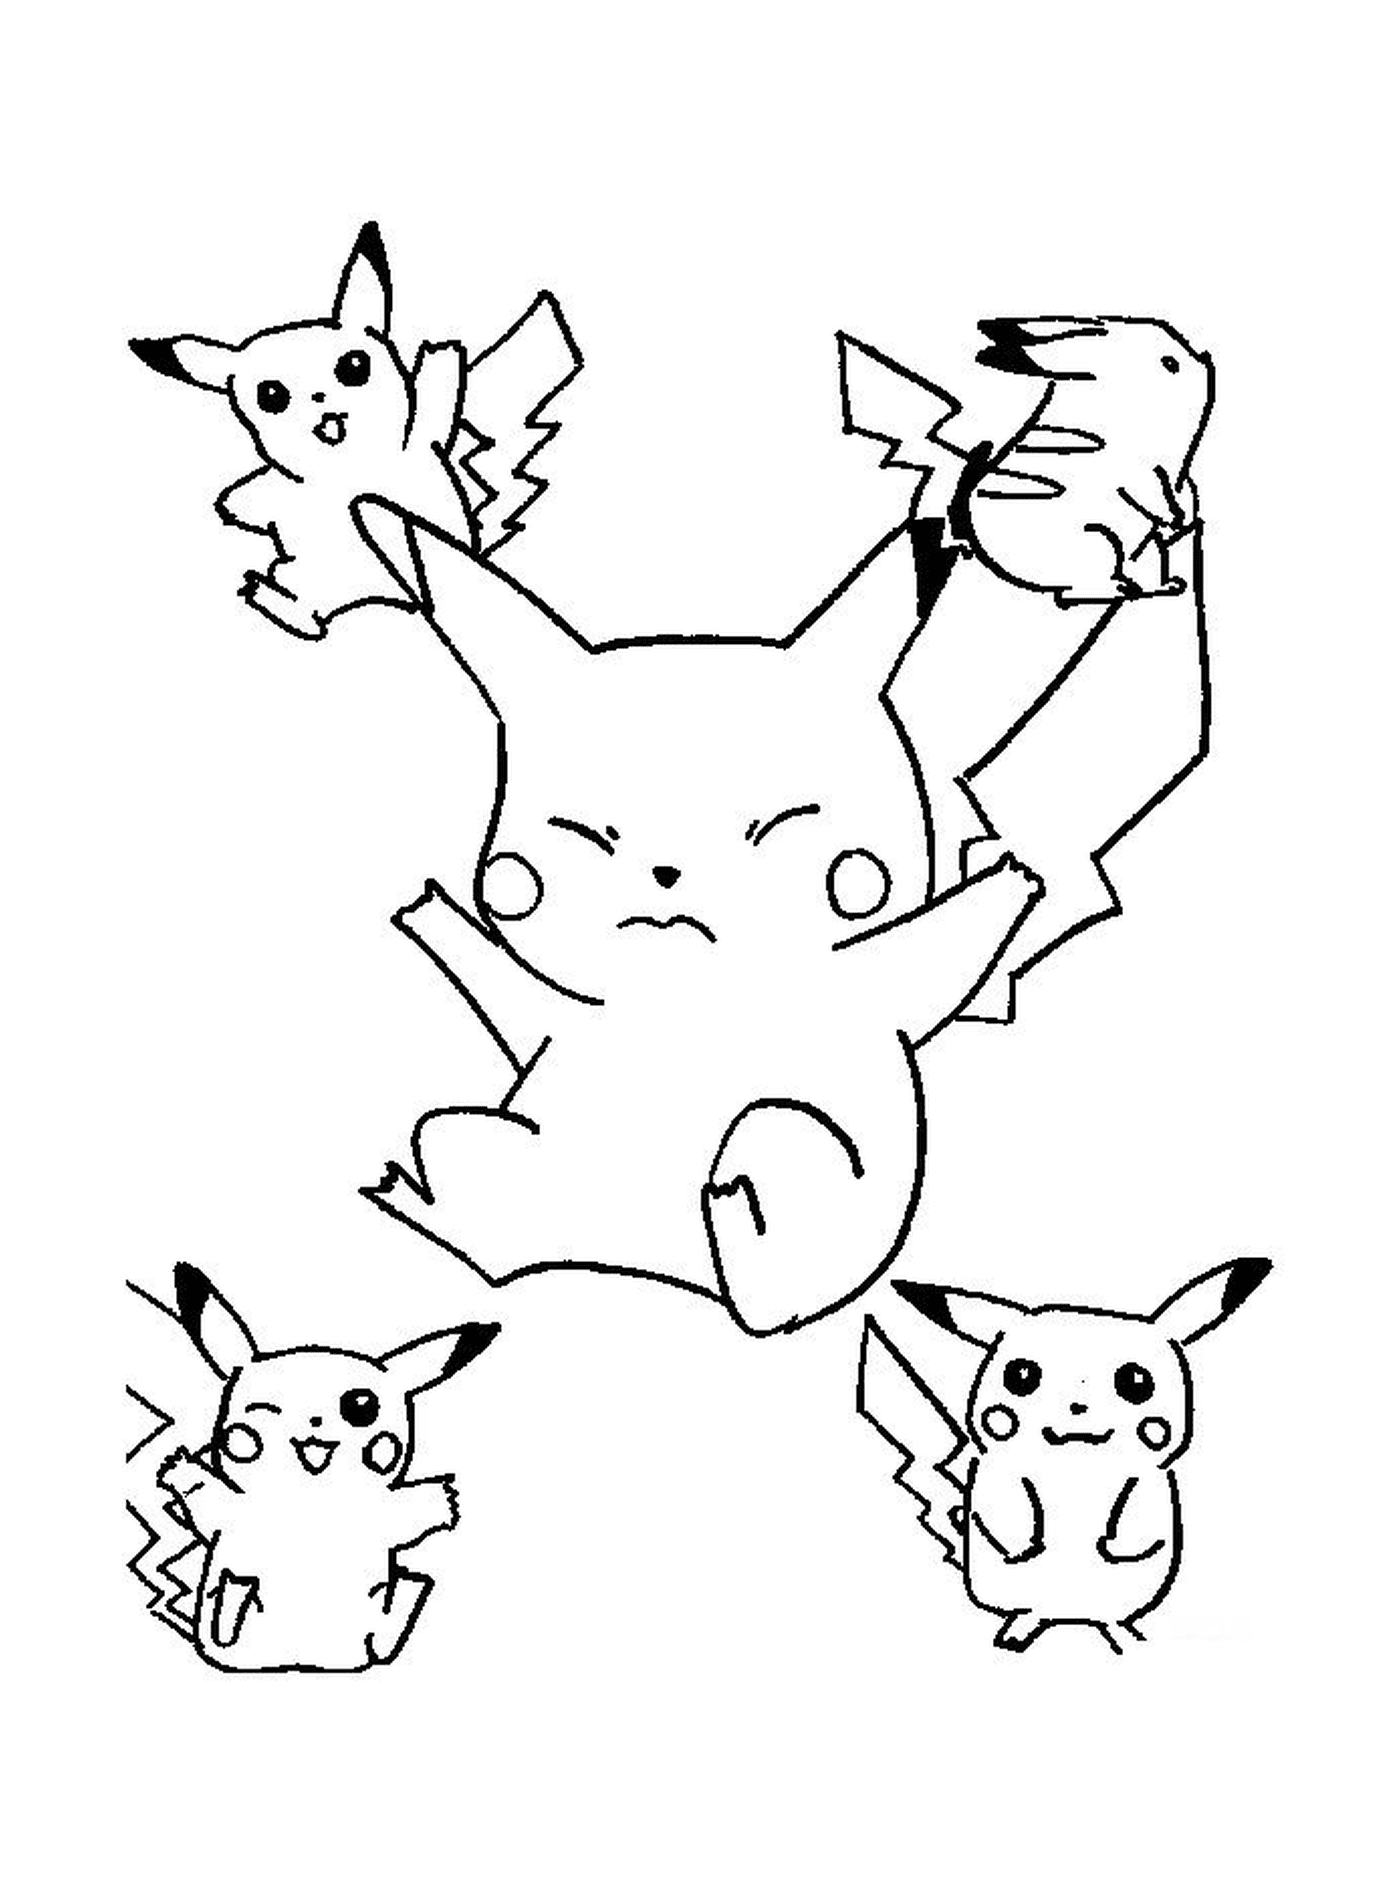  Um grupo de Pikachu pulando no ar 